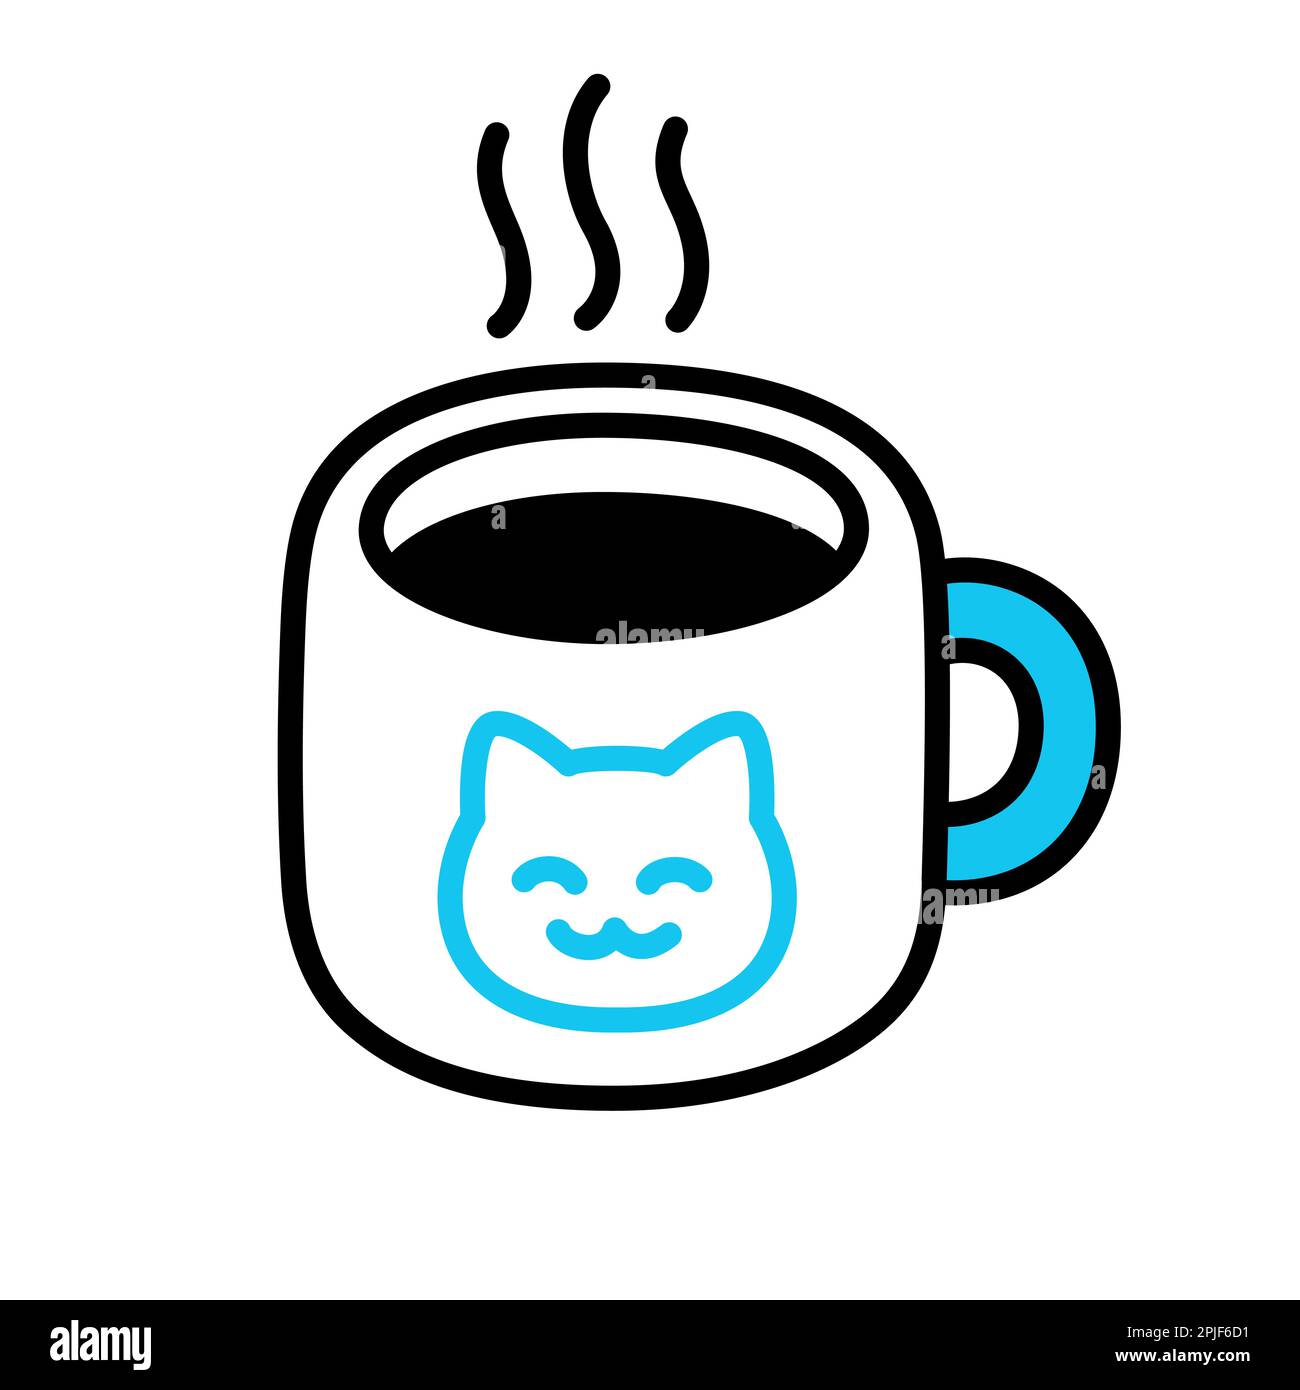 Cute Coffee Mug Coffee Mug by Sketchy